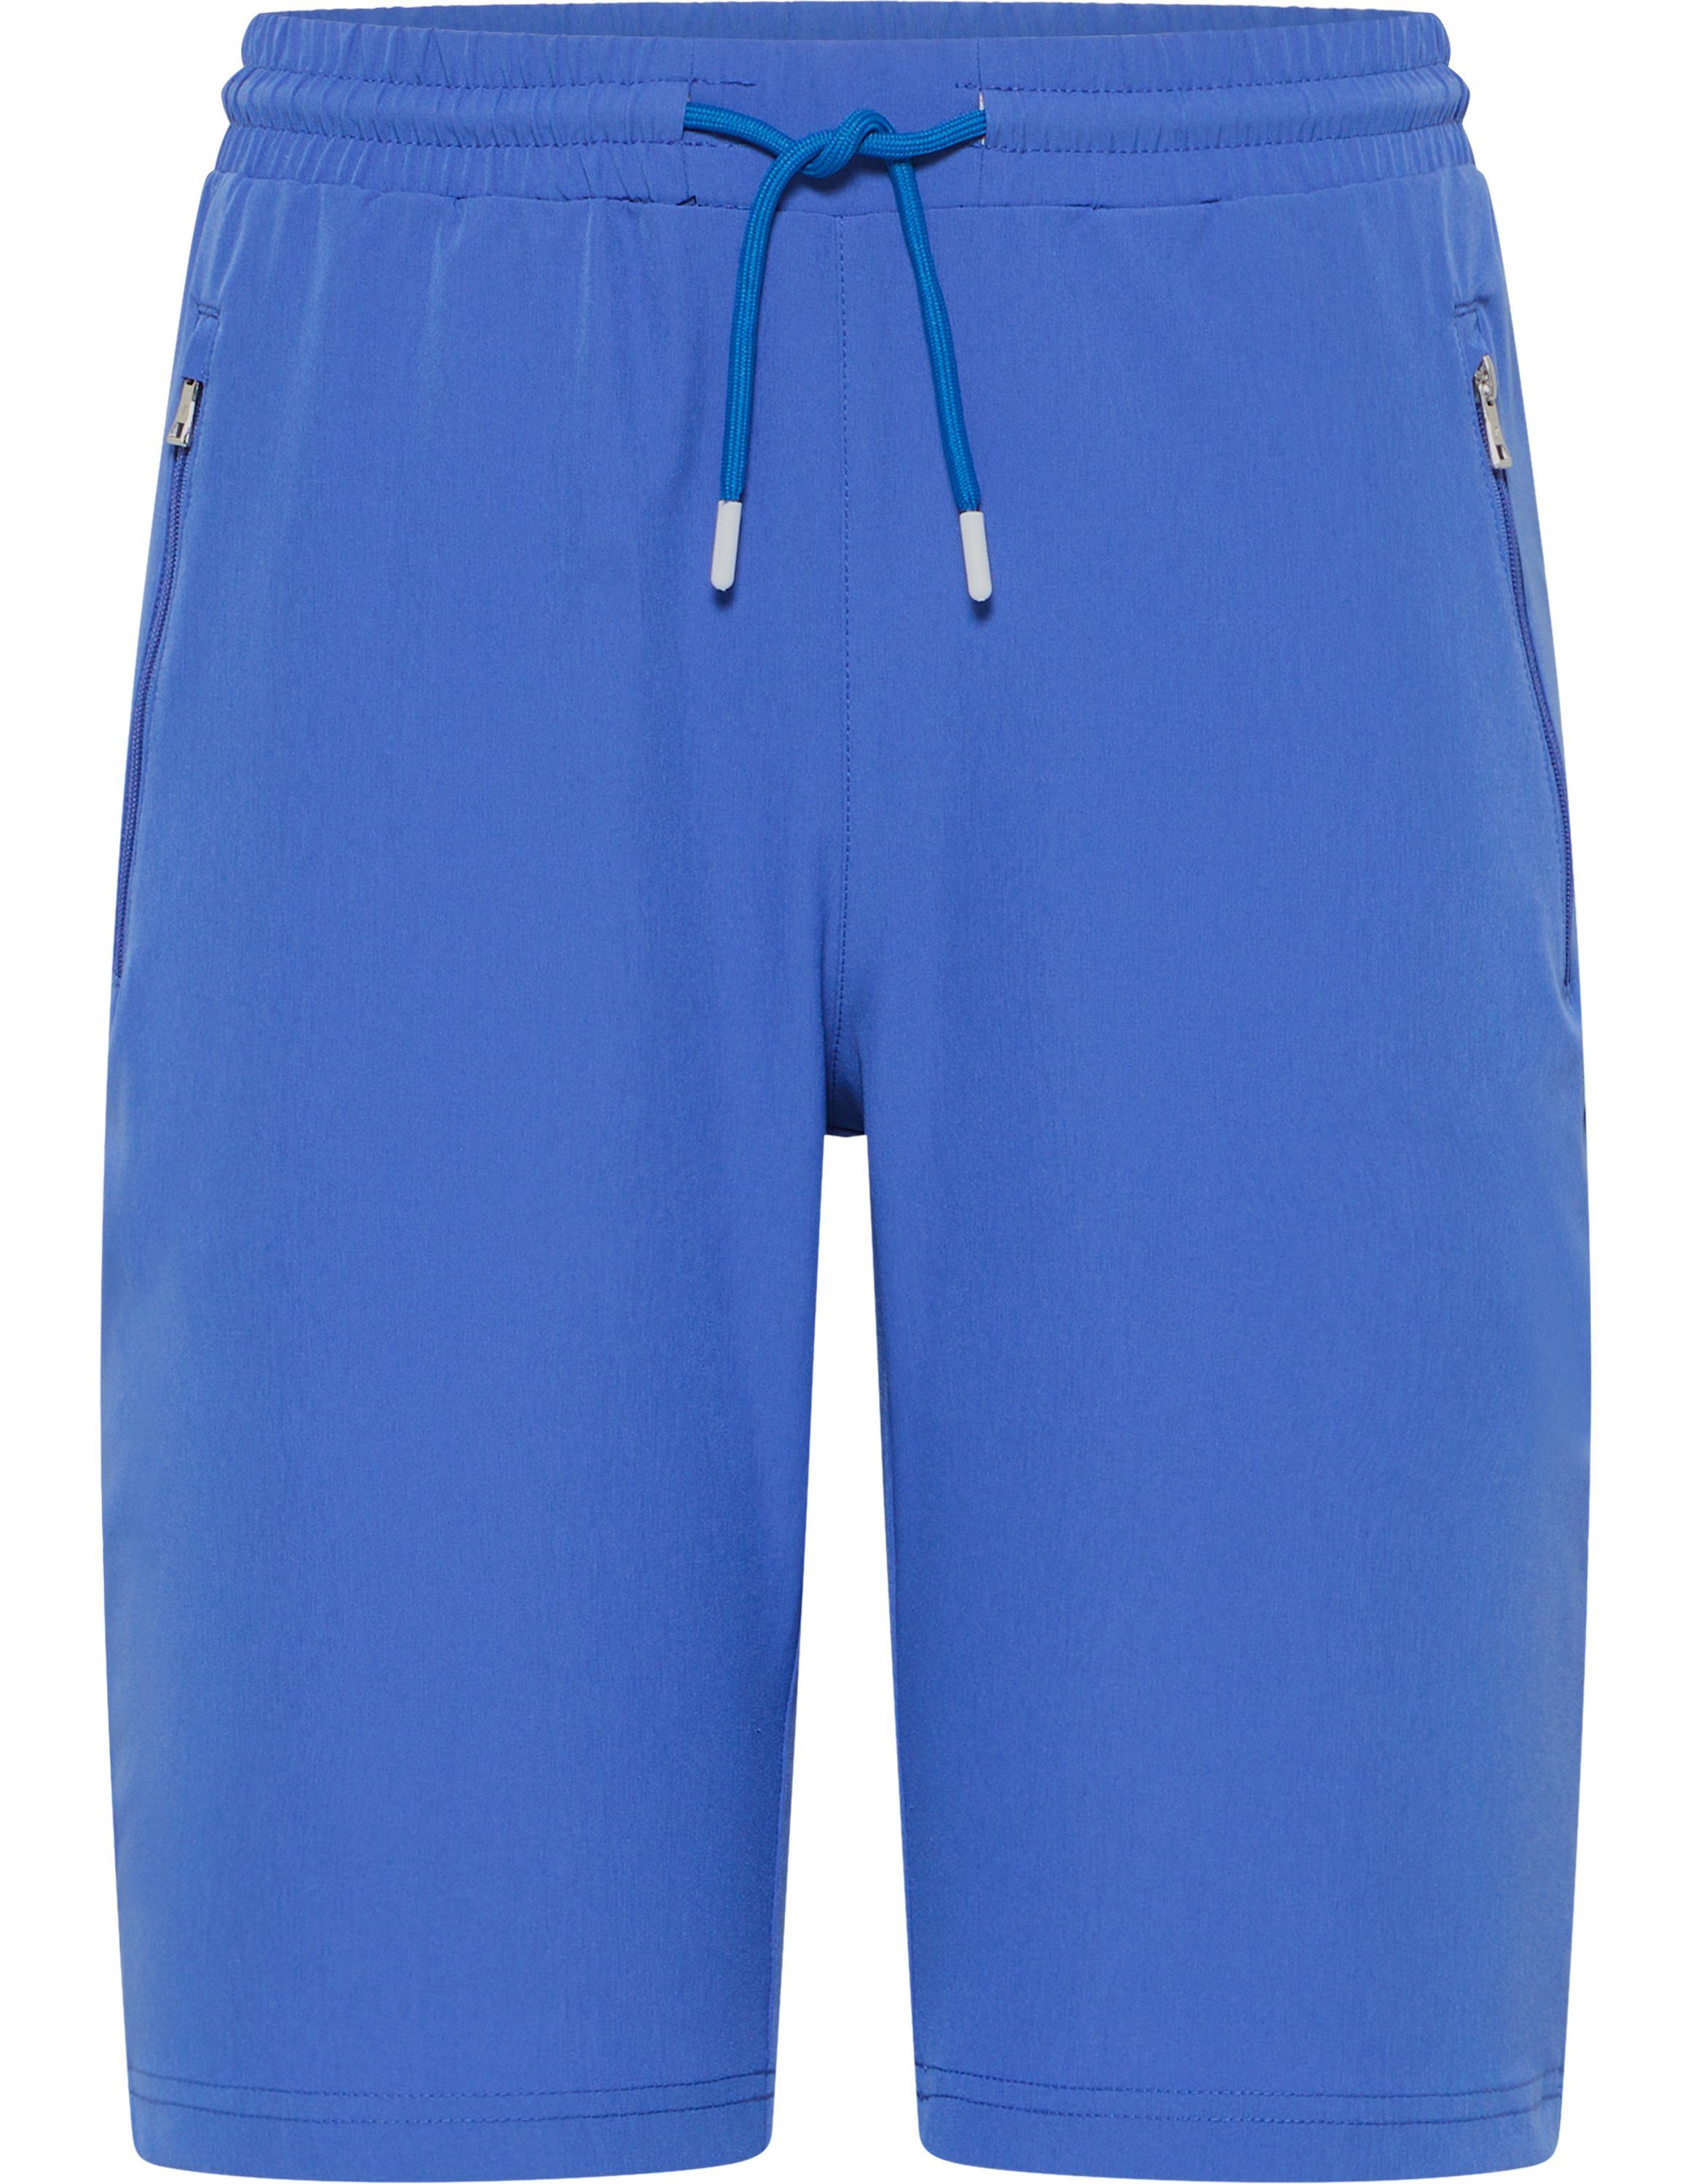 Blaue Shorts für Damen online kaufen | OTTO